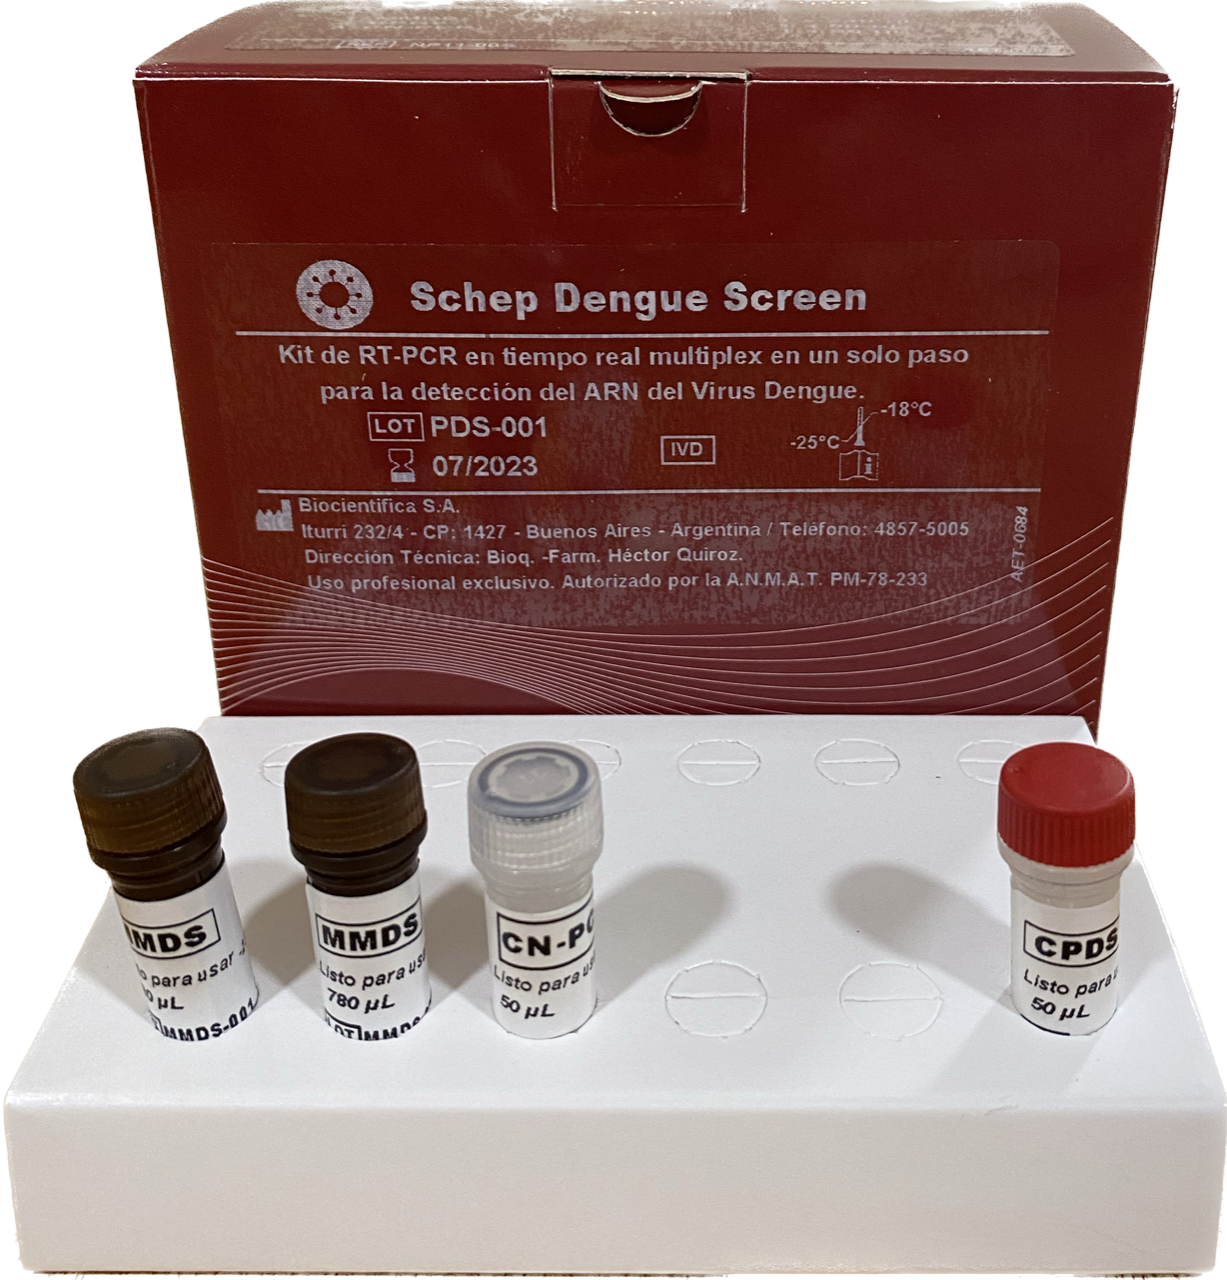 Schep Dengue Screen